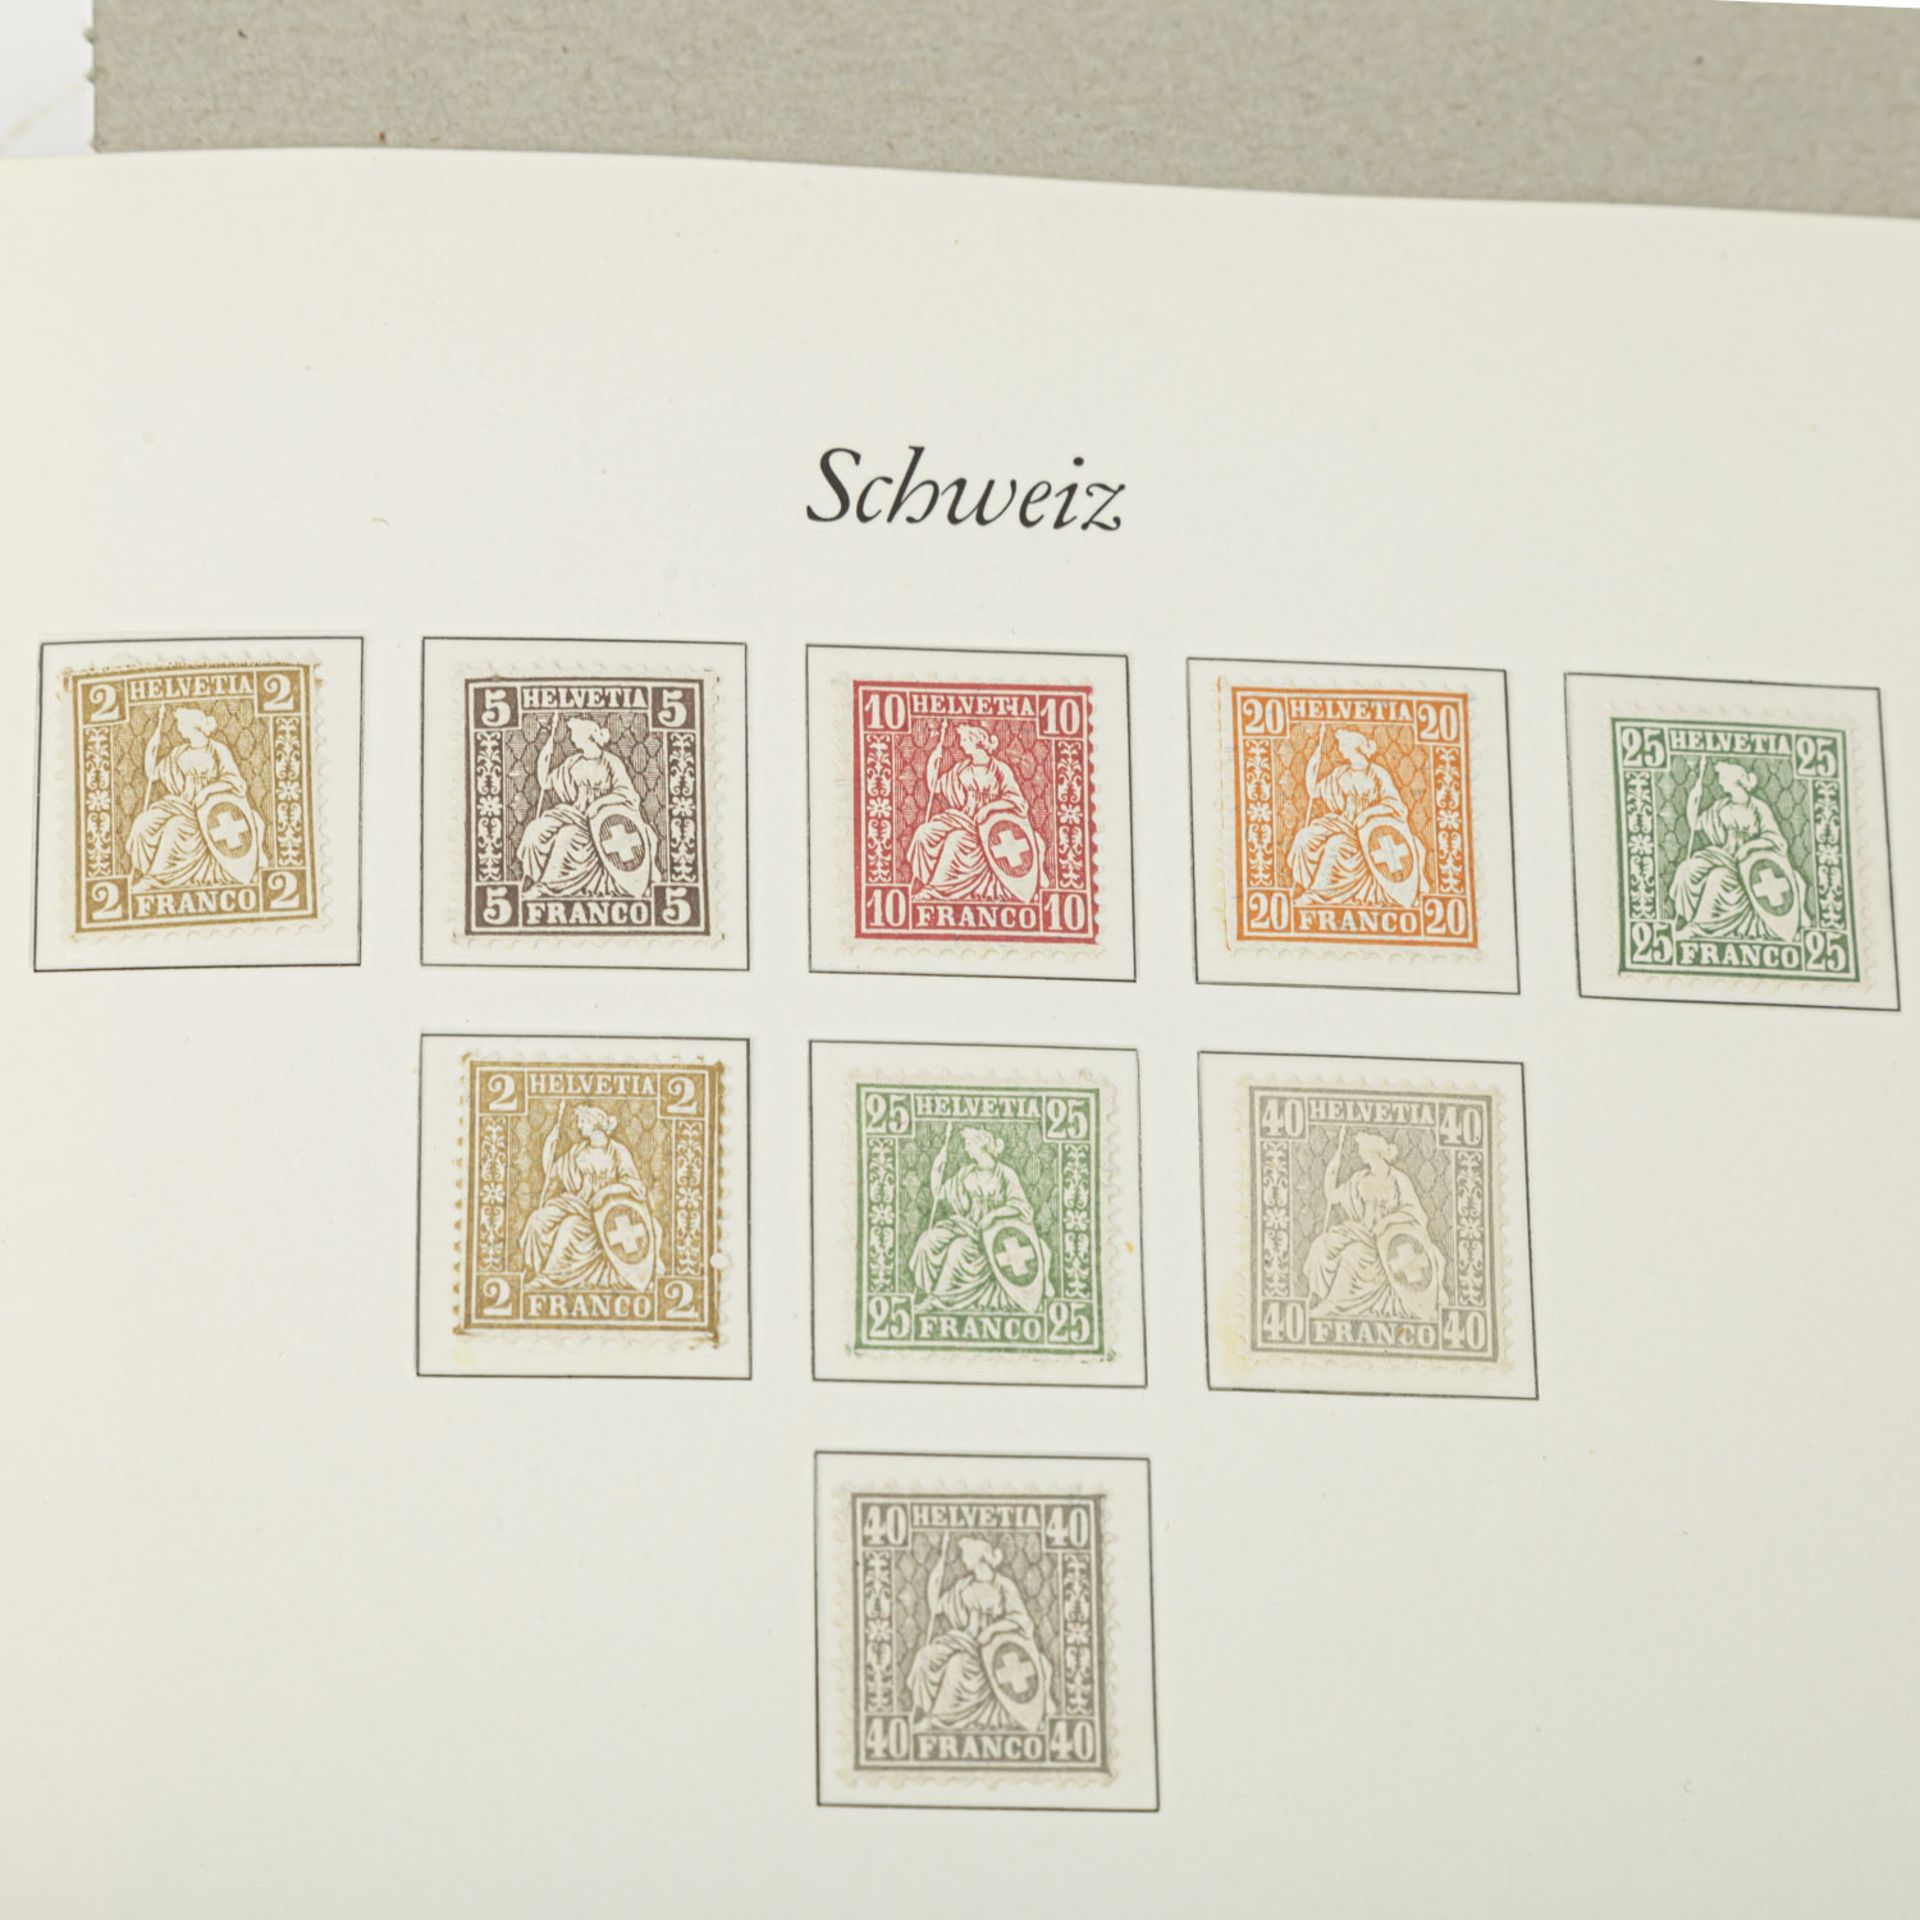 Schweiz - 1972/86, dazu Ausgabe sitzende Helvetia und Weiters bis ca. 1991,meist postfrisch, teils - Bild 5 aus 6